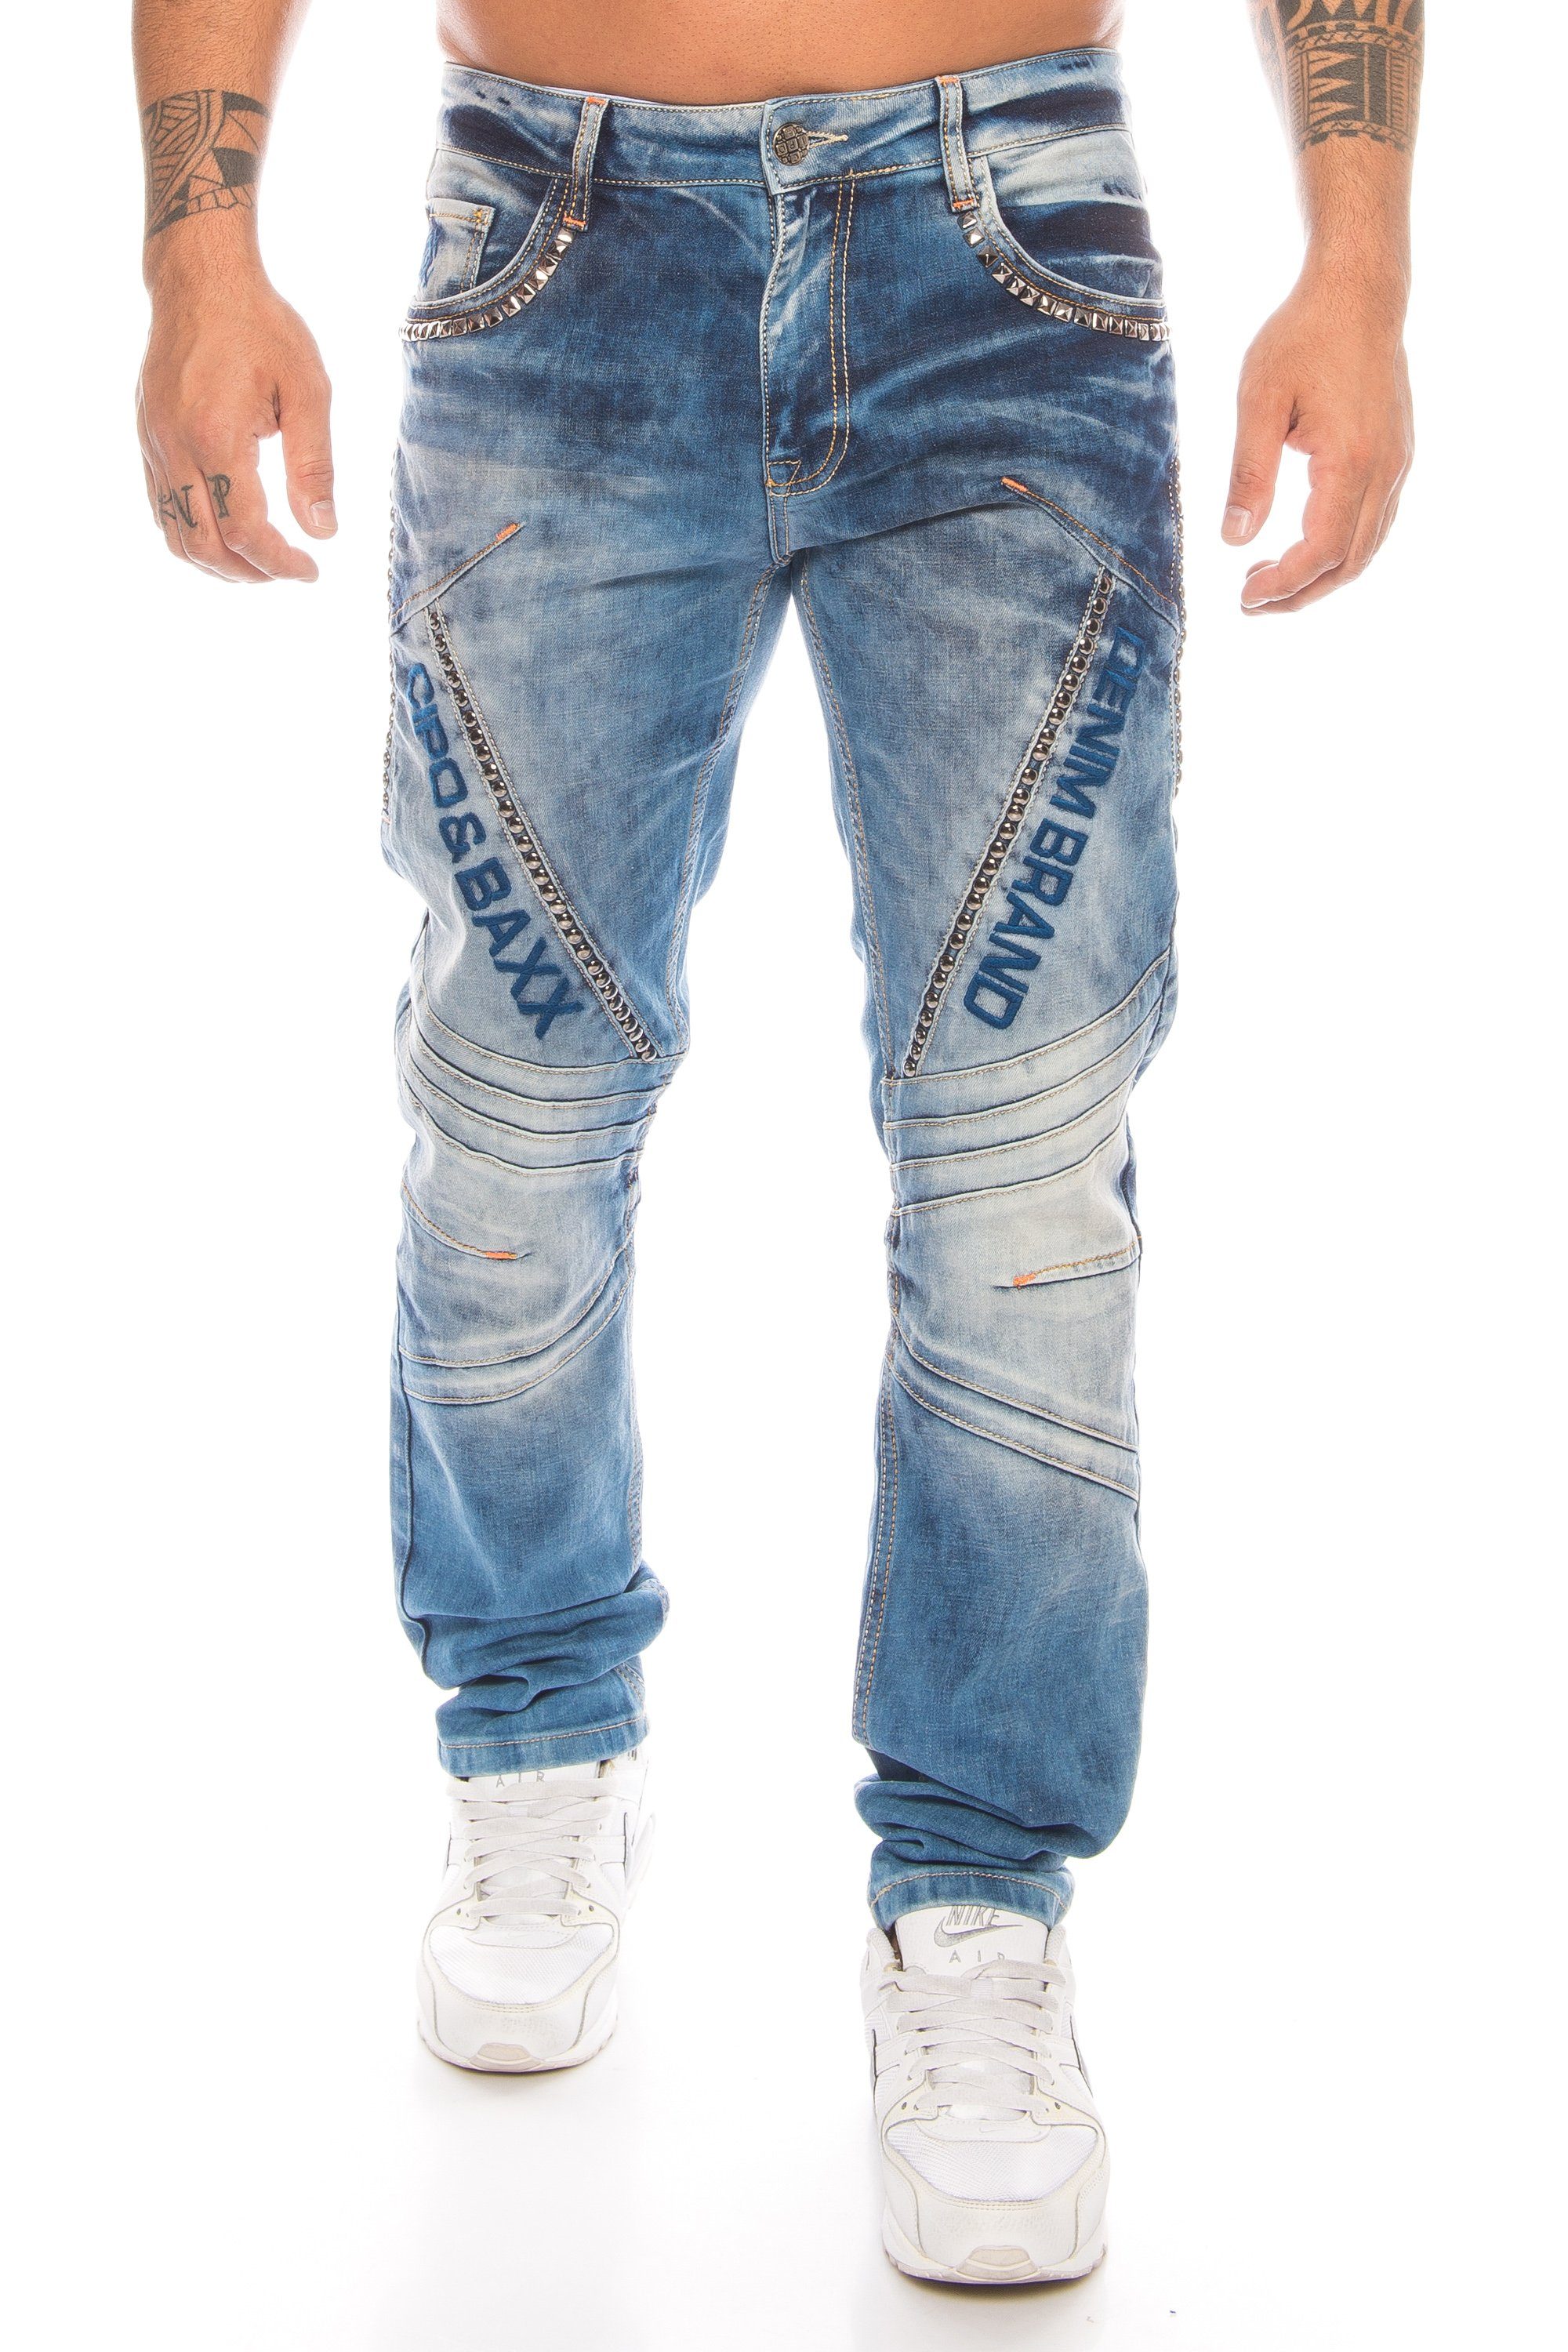 im mit Nietenverzierung Hose Cipo mit Jeans Jeans aufwendiger die Regular-fit-Jeans Labelschrift Hose durch Nietenverzierung Extra & und dem Herren gewissen Baxx